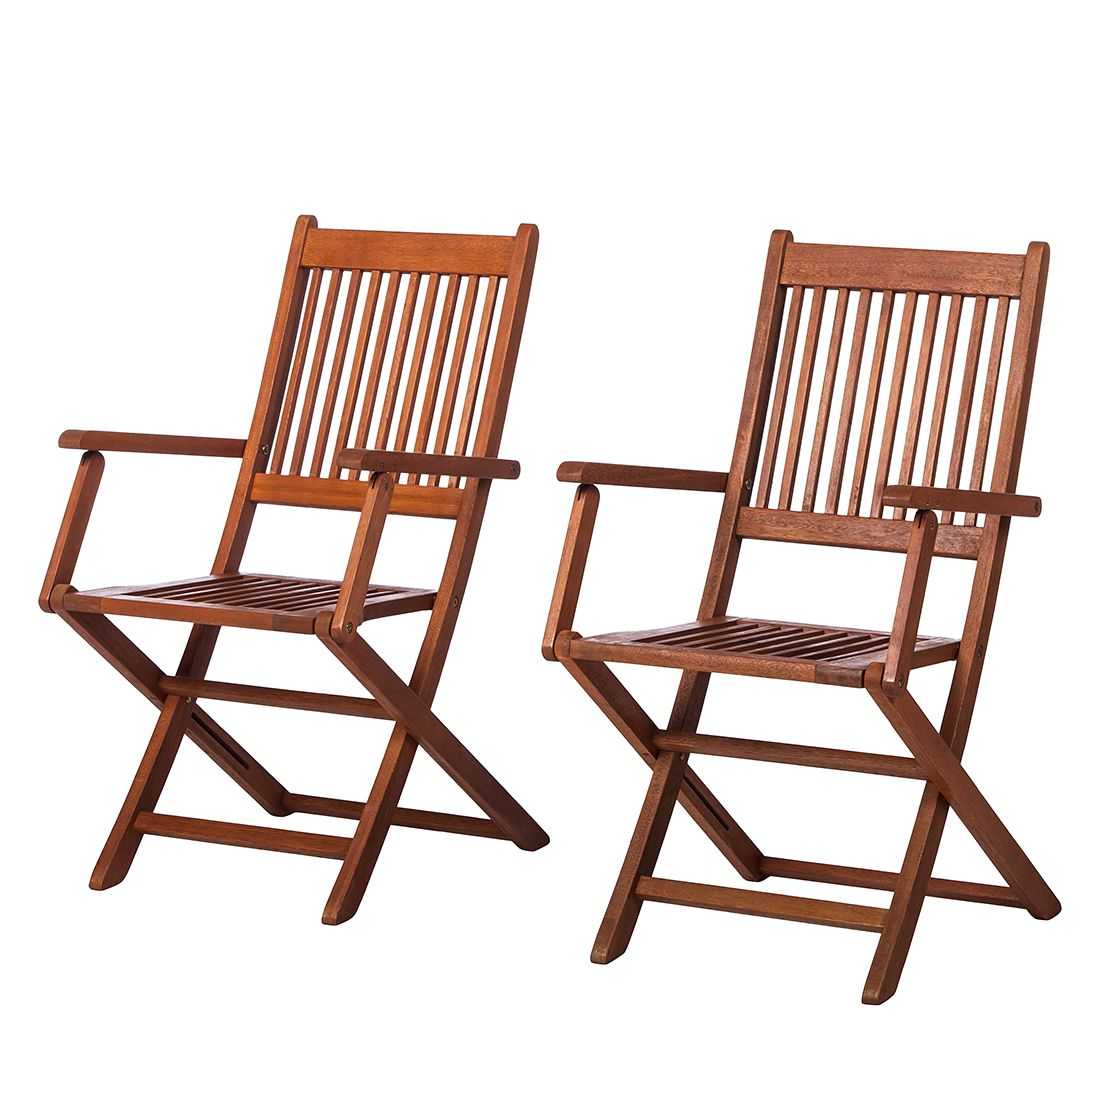 Складной стул для дома. Складной стул Connubia skip cb207. Стул раскладной деревянный. Складные стулья со спинкой деревянные. Стул складной деревянный со спинкой.